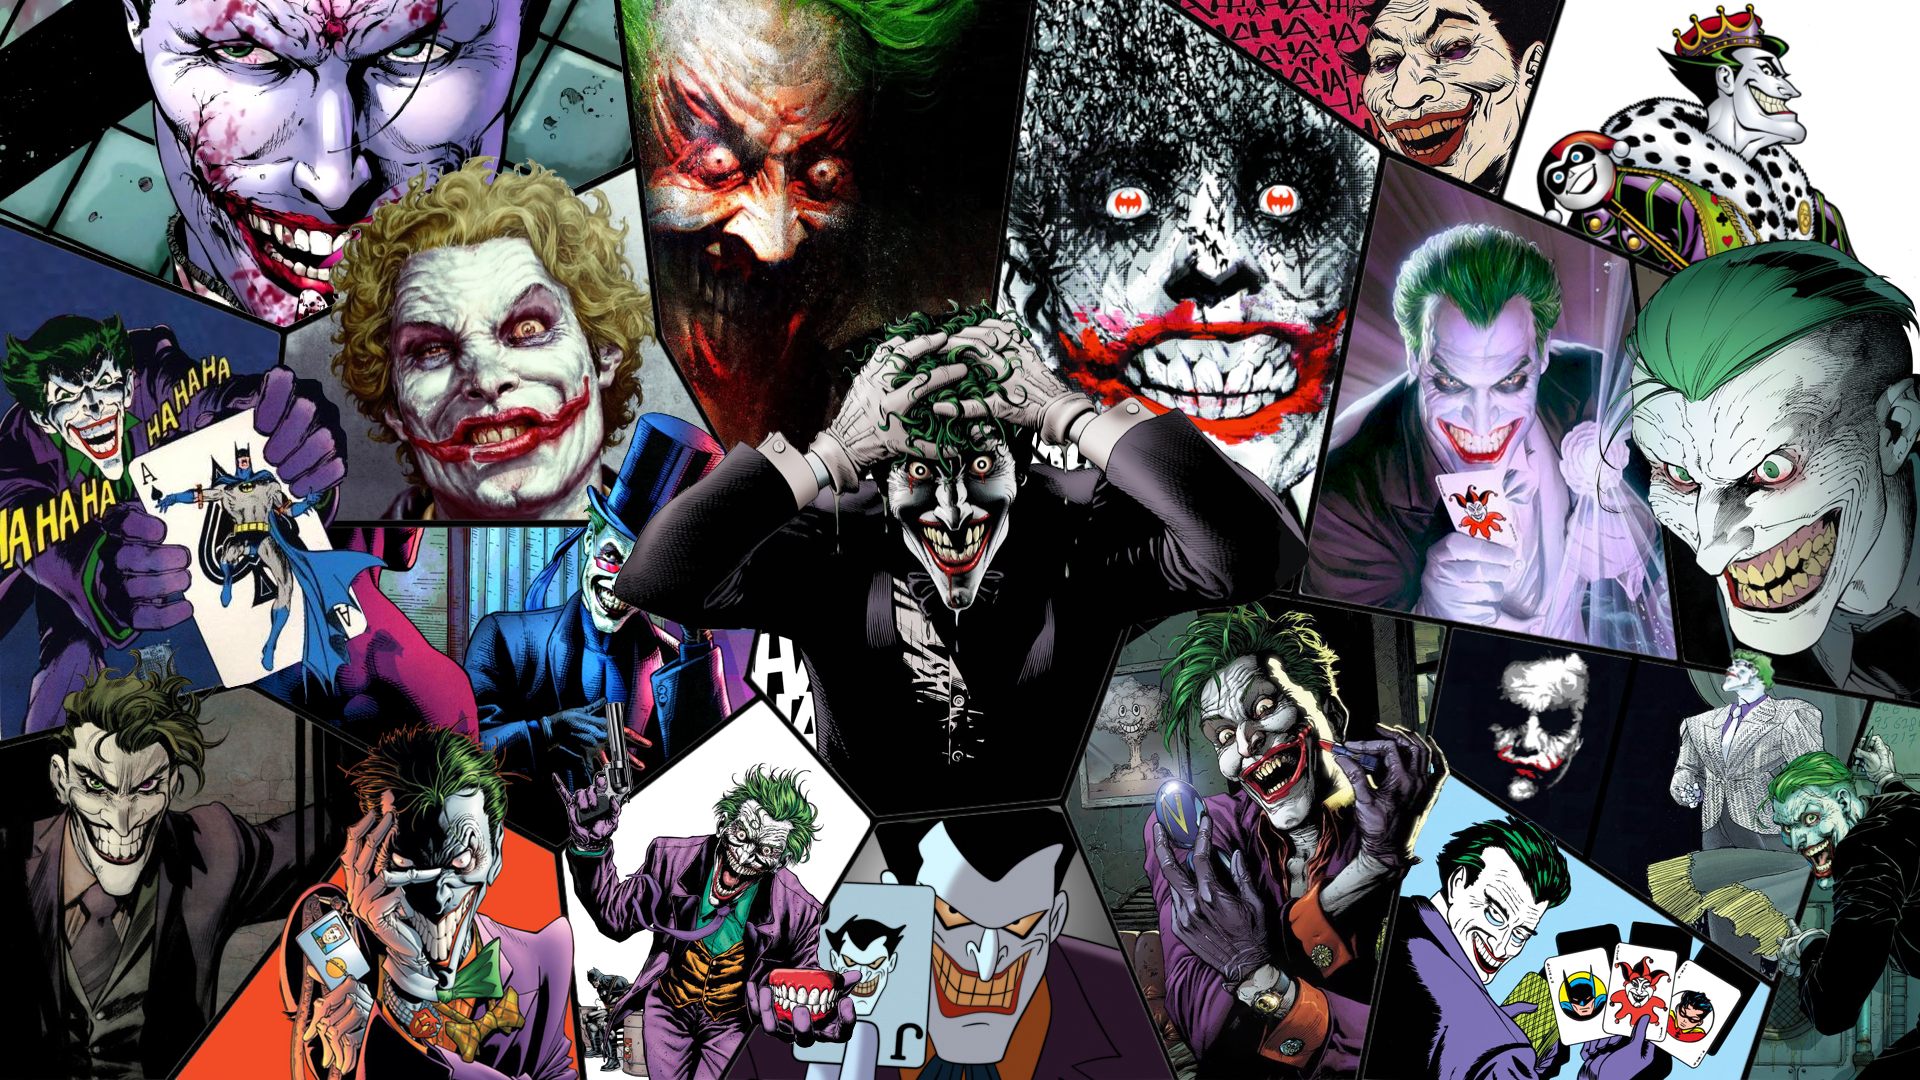 General 1920x1080 Joker DC Comics comics collage Batman artwork